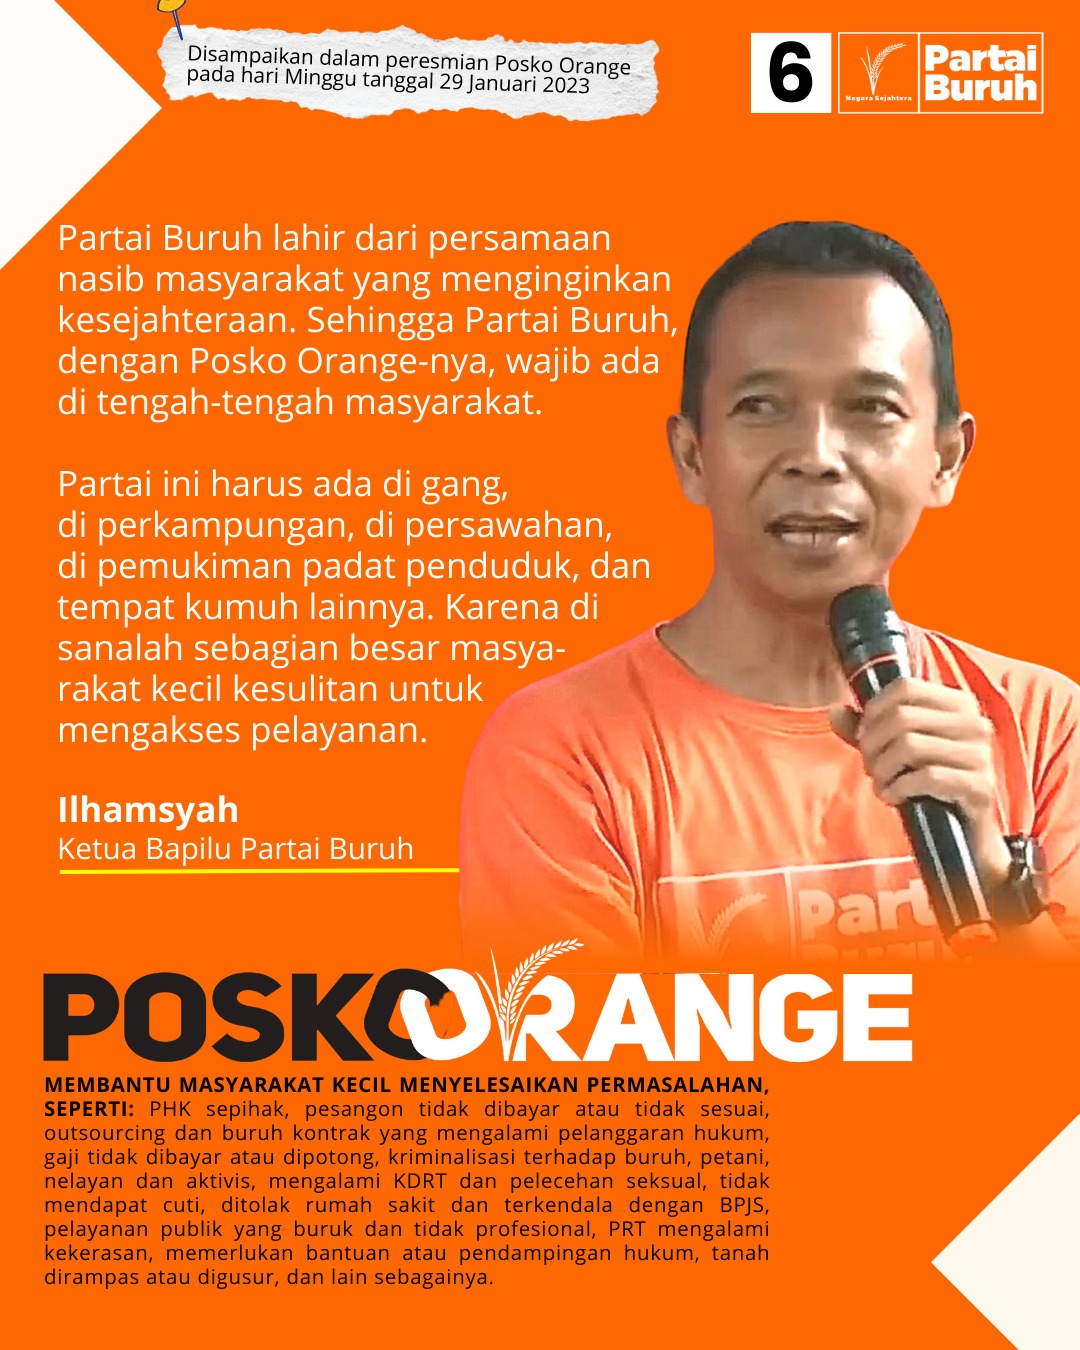 Partai Buruh: Posko Orange adalah Kerja Konkret Partai